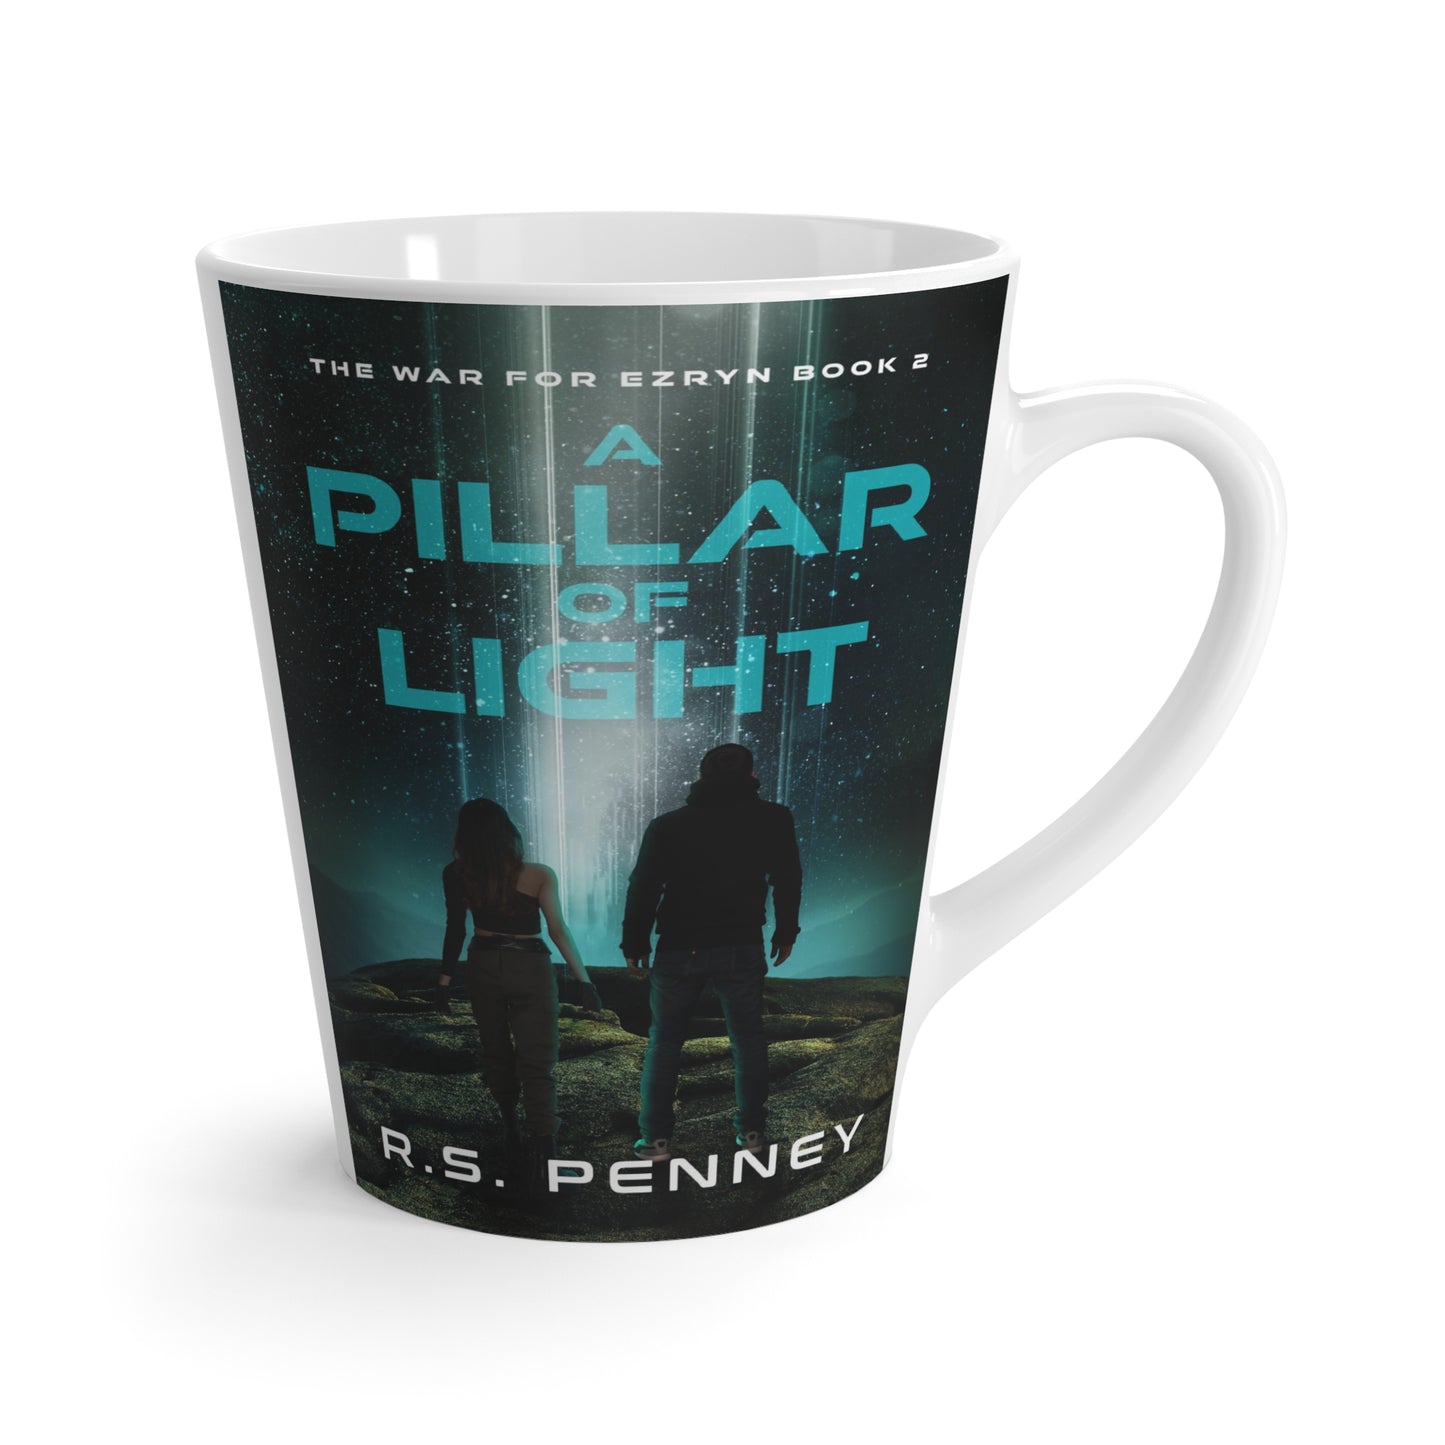 A Pillar Of Light - Latte Mug